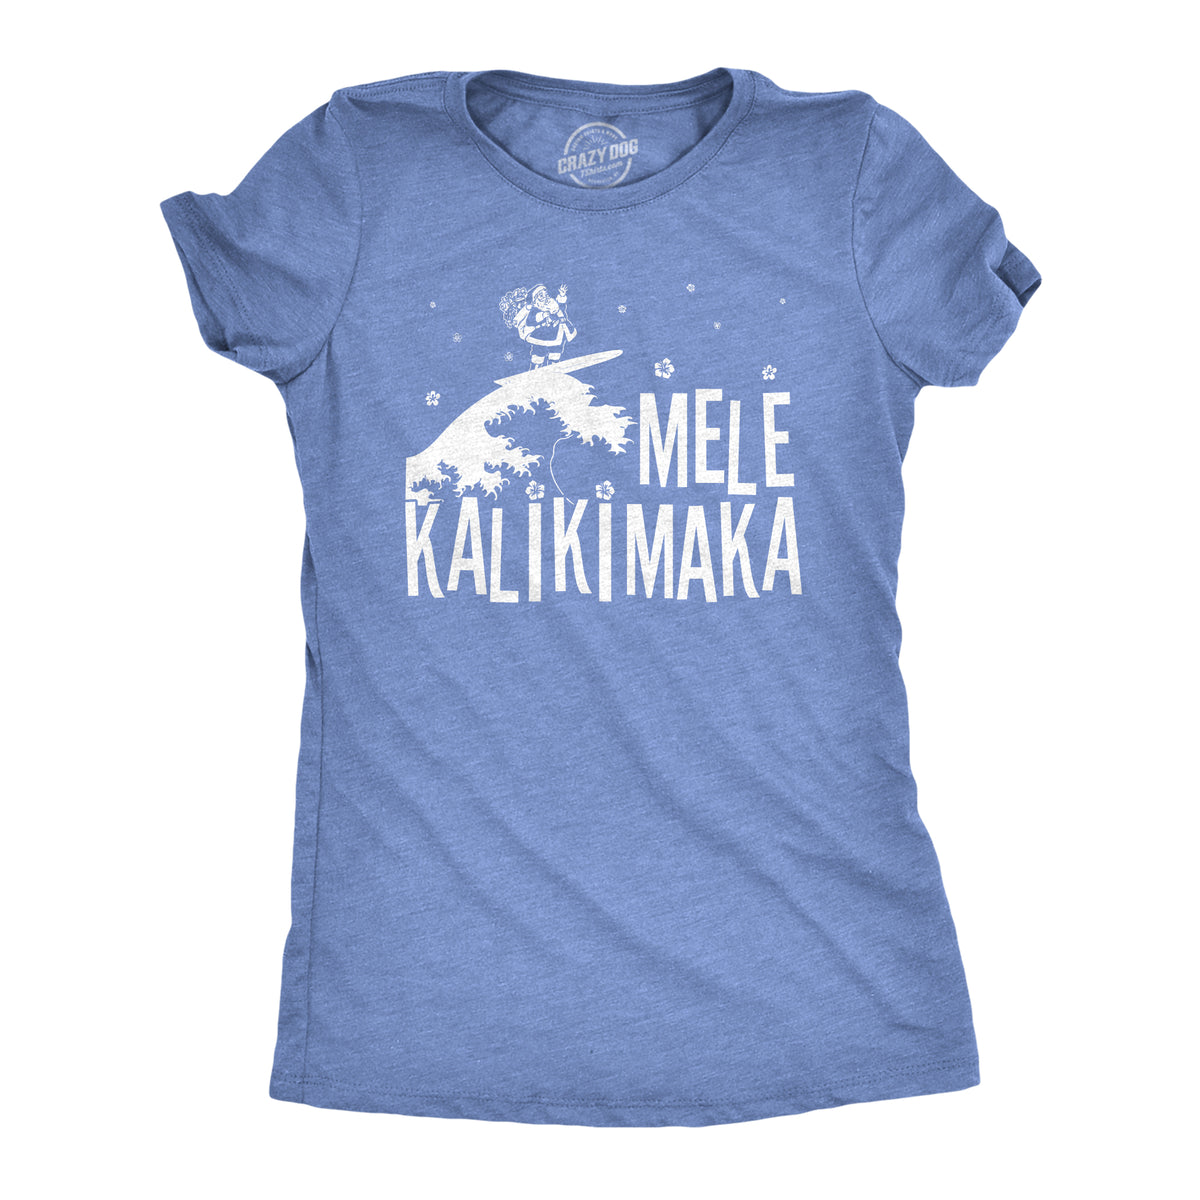 Funny Heather Light Blue Mele Kalikimaka Womens T Shirt Nerdy Christmas Tee